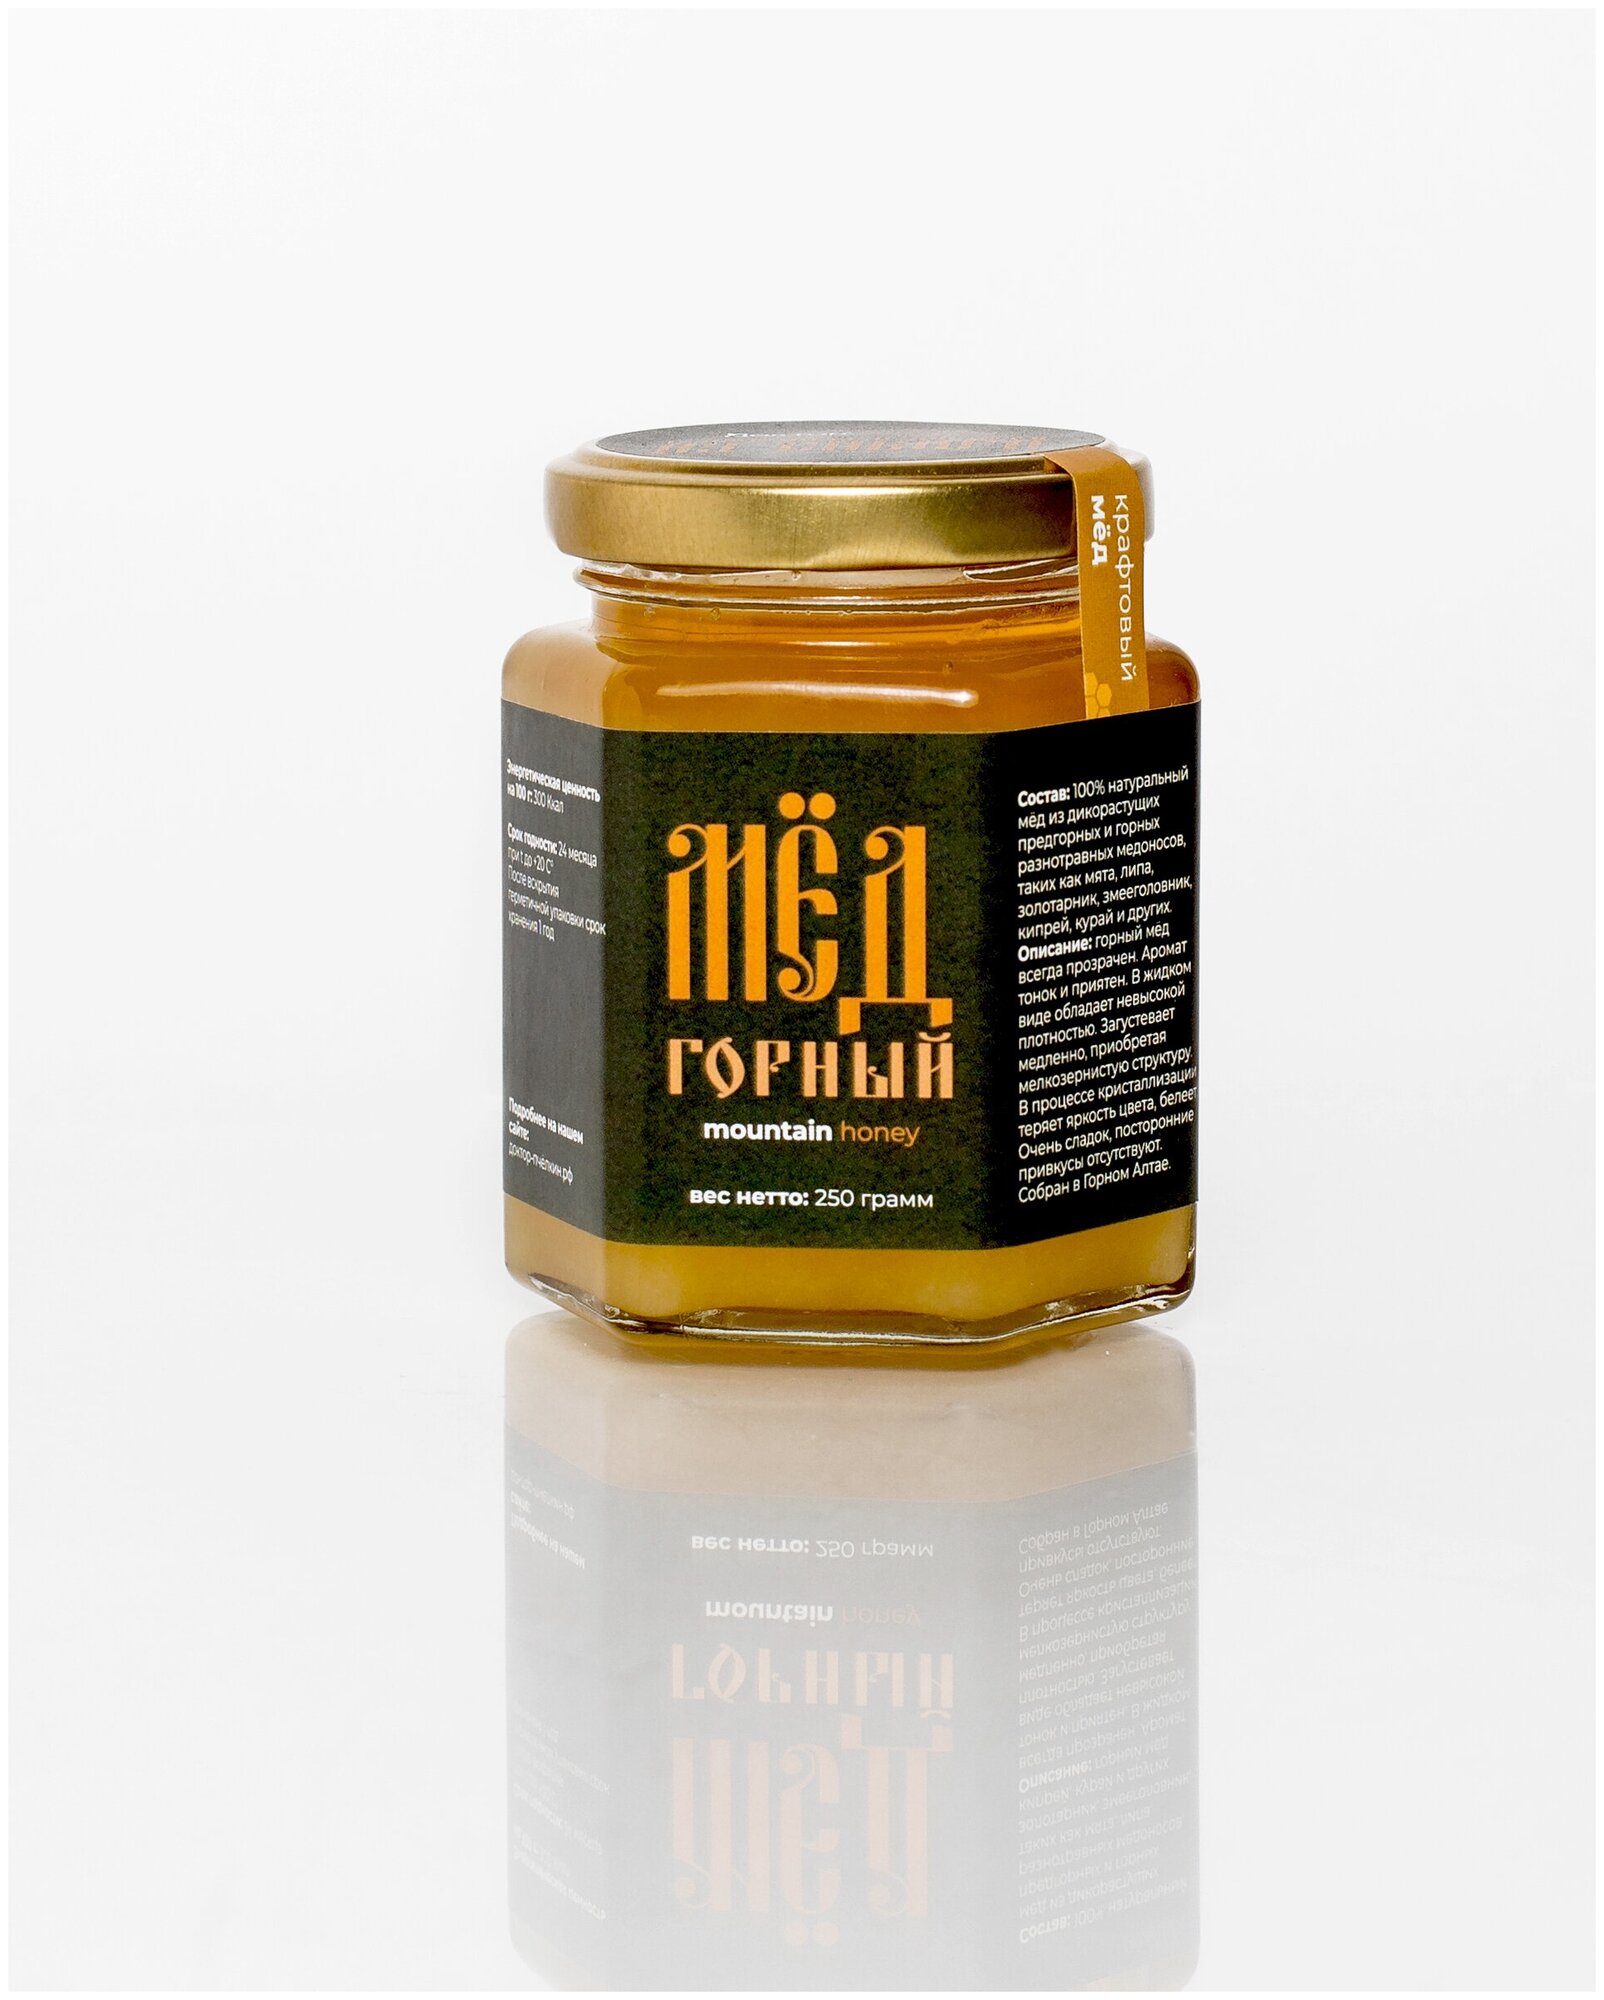 Горный мёд (Mountain honey) 250 гр.